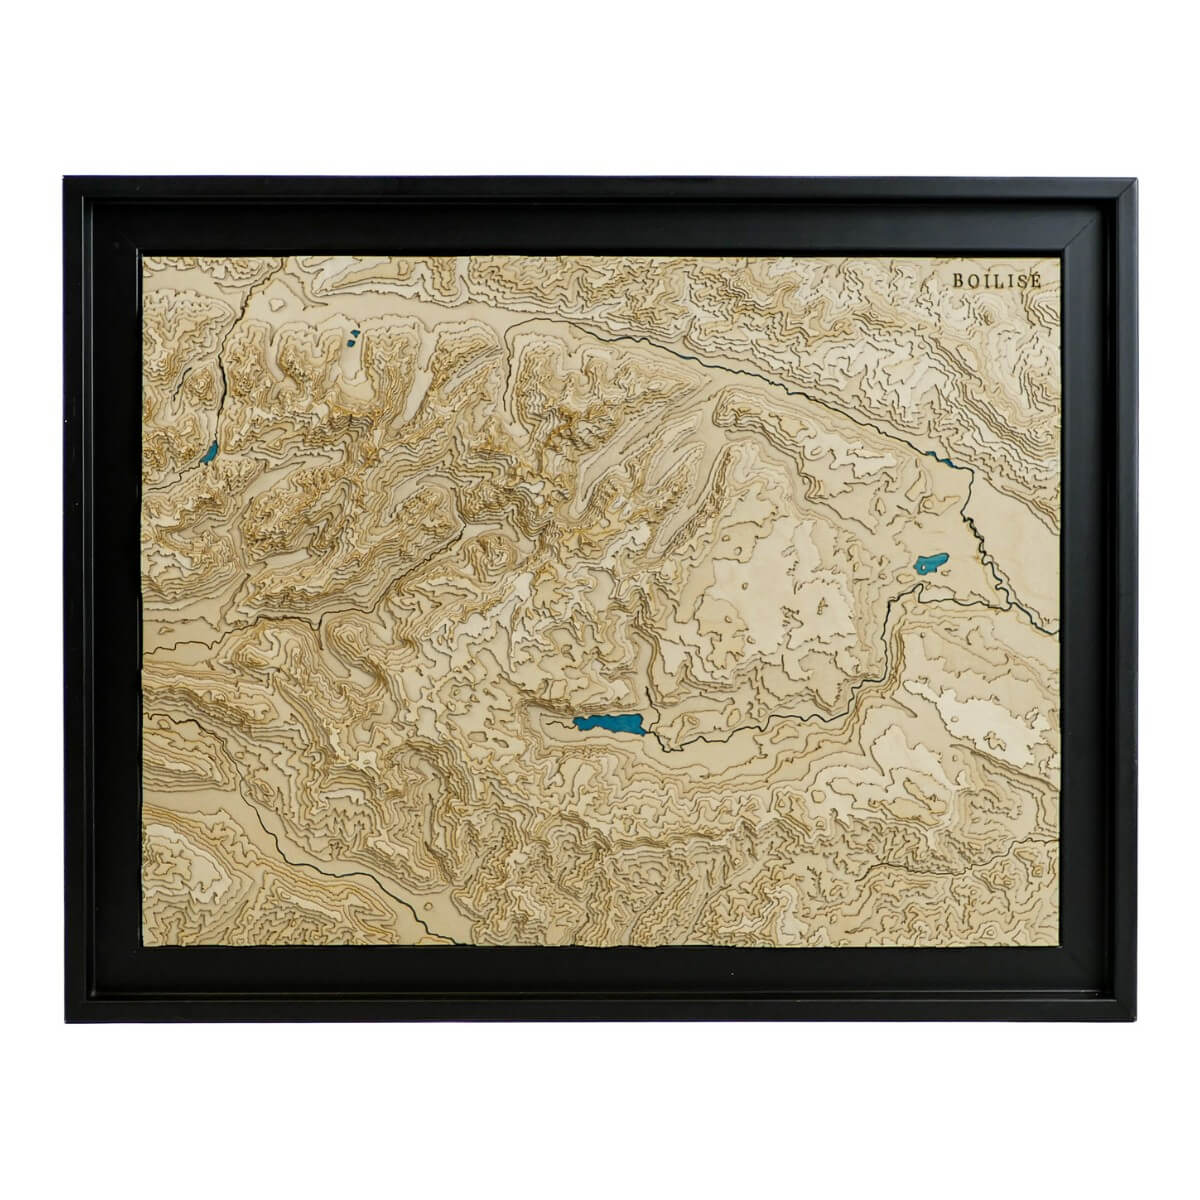 Carte topographique en bois et en relief des Alpes Juliennes encadrée dans une caisse américaine noire